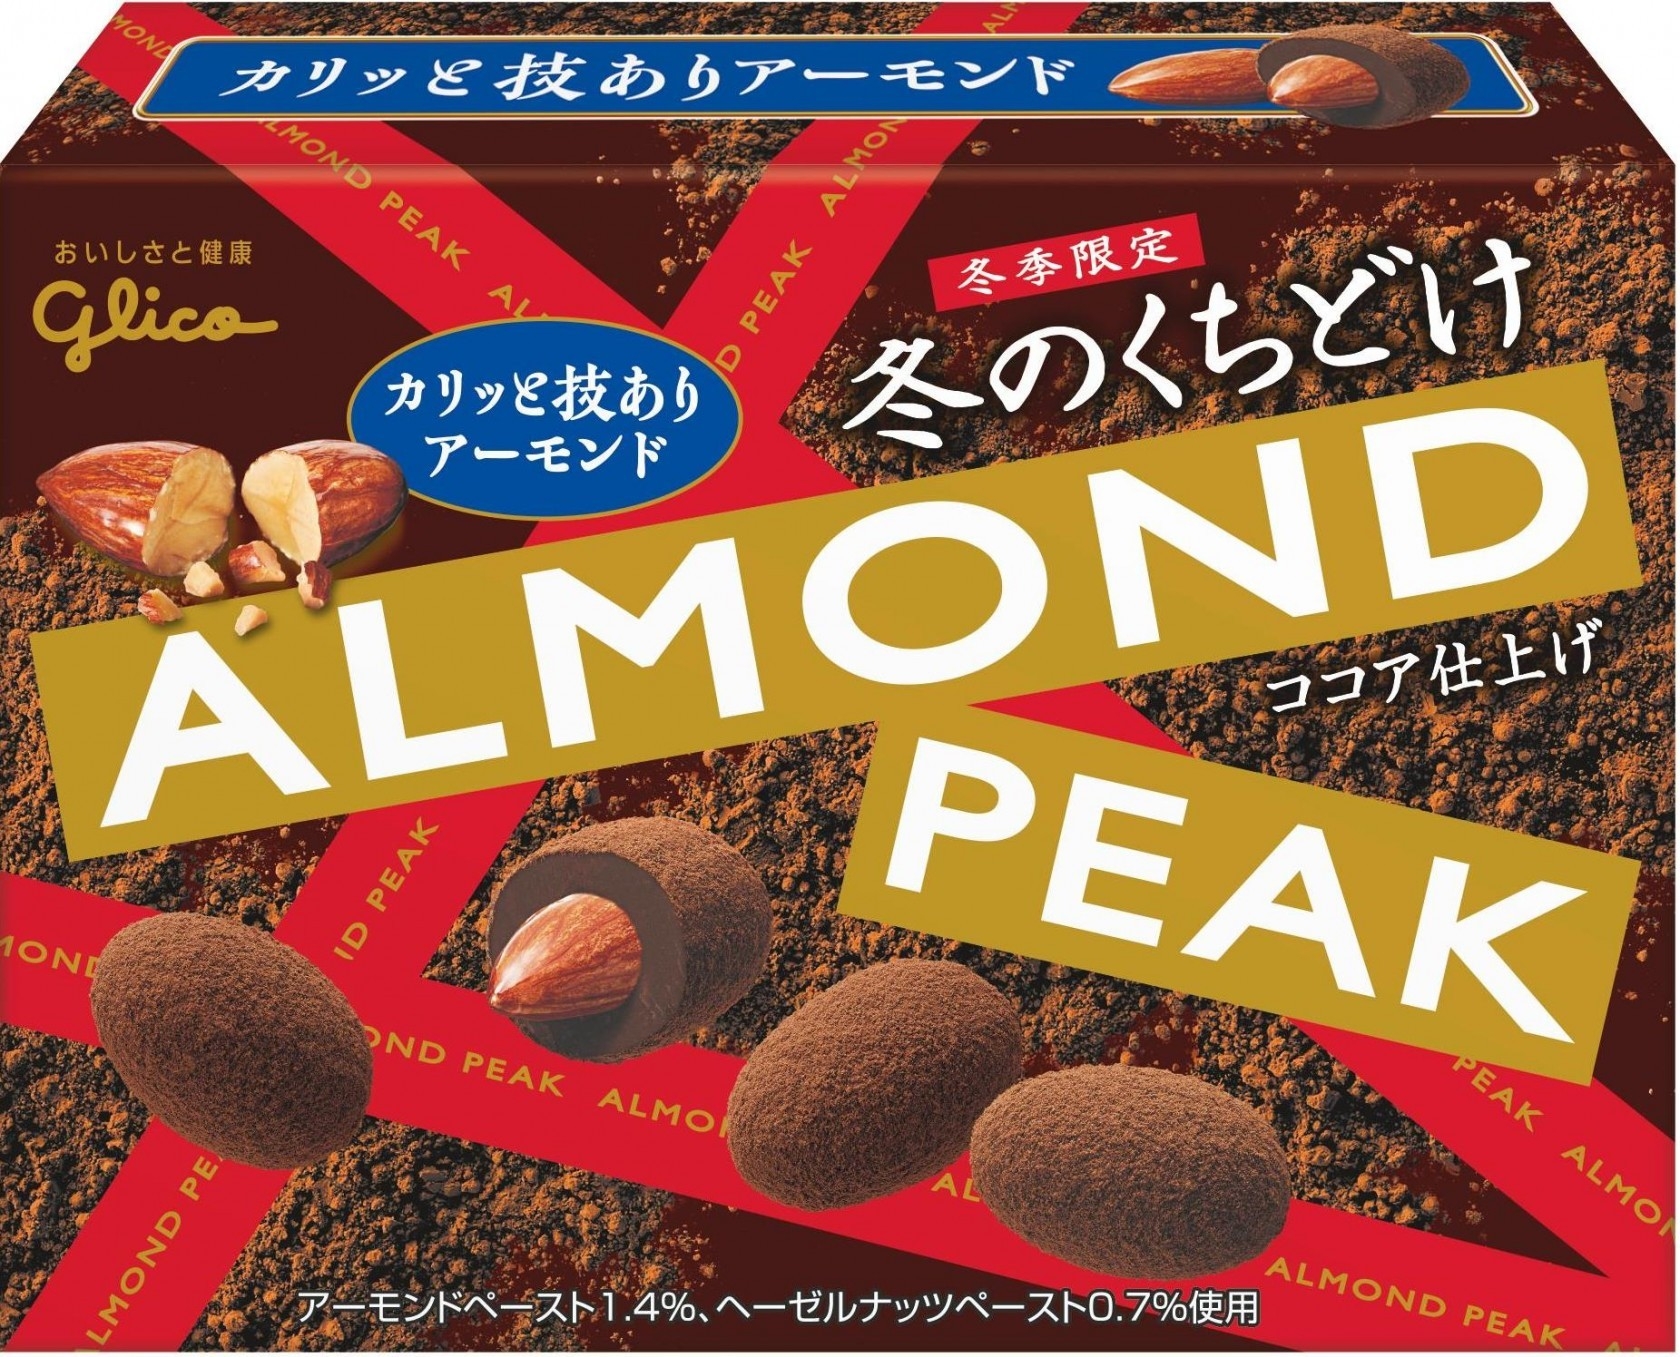 冬のくちどけアーモンドピーク 2個 江崎グリコ チョコレート